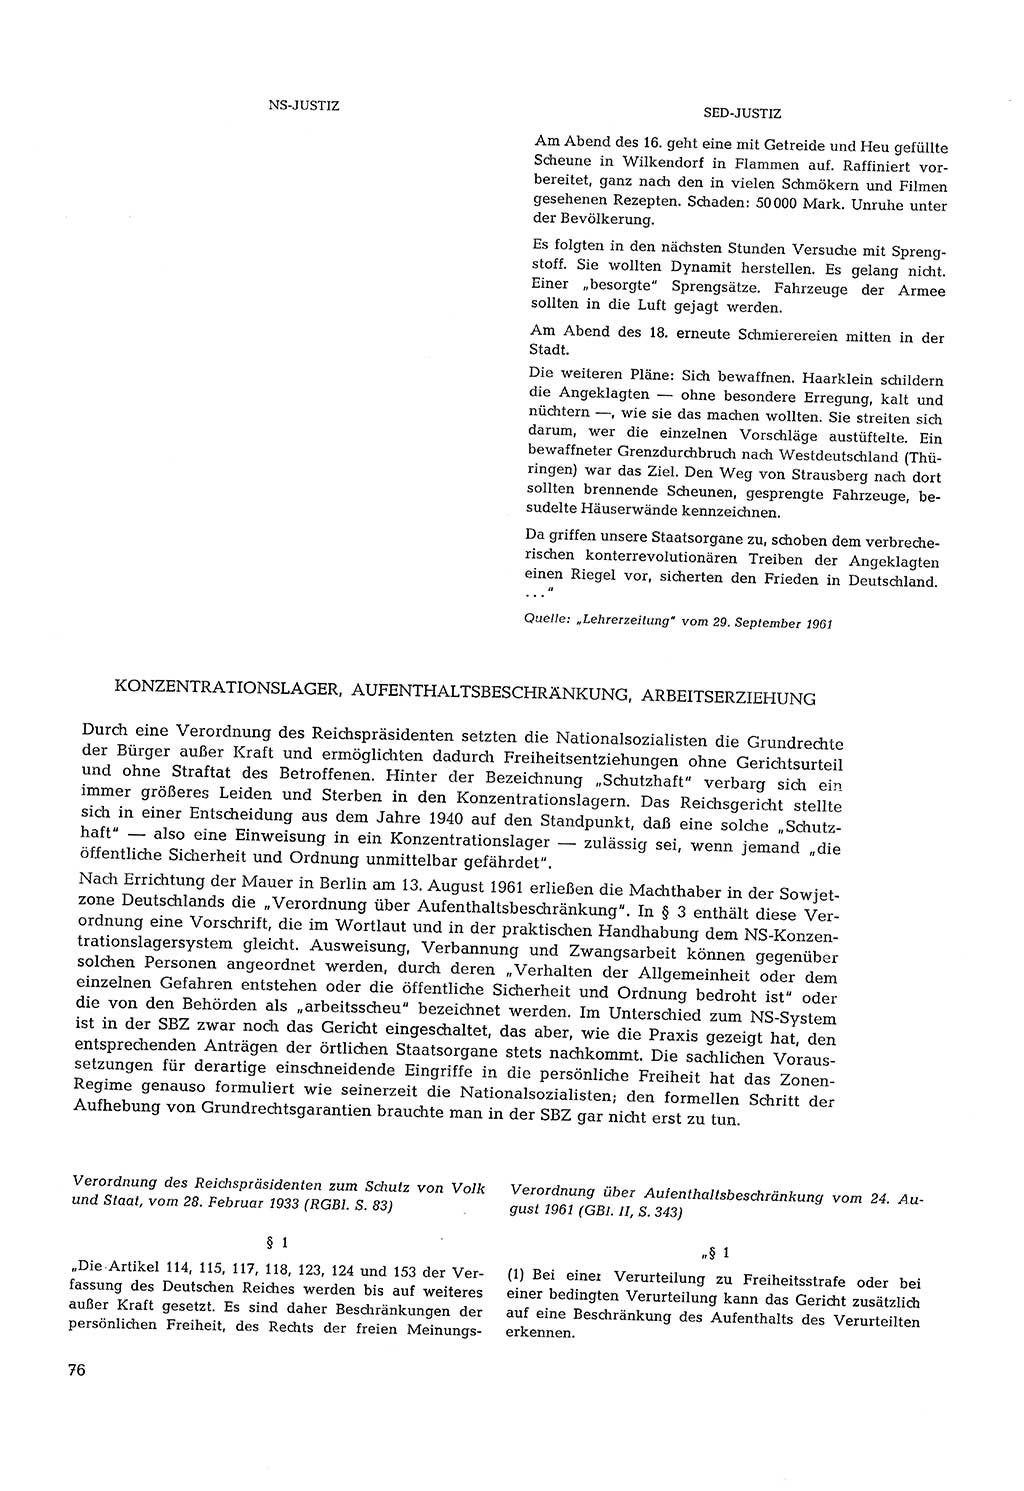 Partei-Justiz, Dokumentation über den nationalsozialistischen und kommunistischen Rechtsmißbrauch in Deutschland 1933-1963, Seite 76 (Part.-Just. Dtl. natsoz. komm. 1933-1963, S. 76)